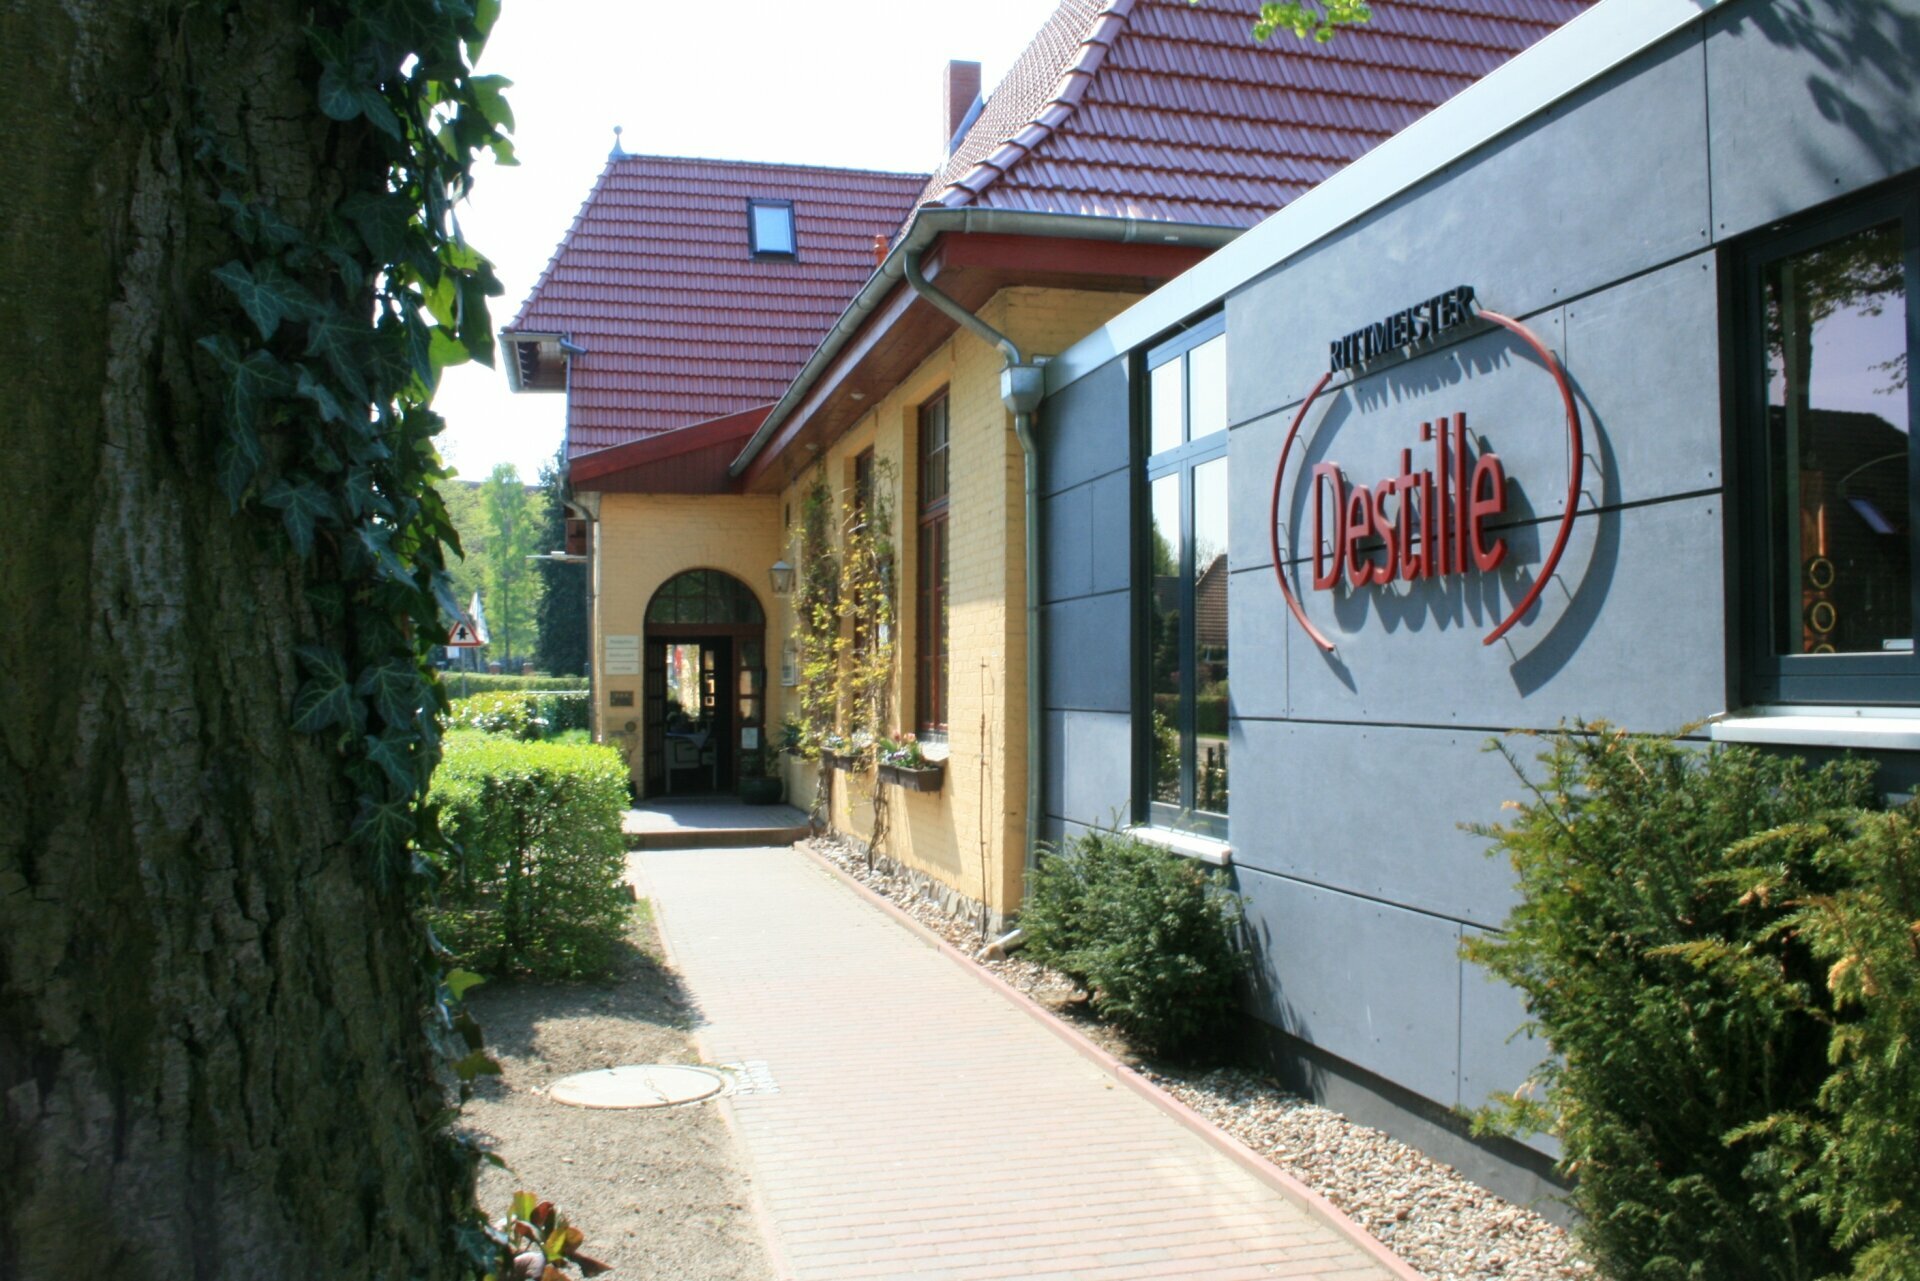 2 Tage Wellness Kurztrip Landhotel Rittmeister in Rostock, Mecklenburg-Vorpommern inkl. Frühstück